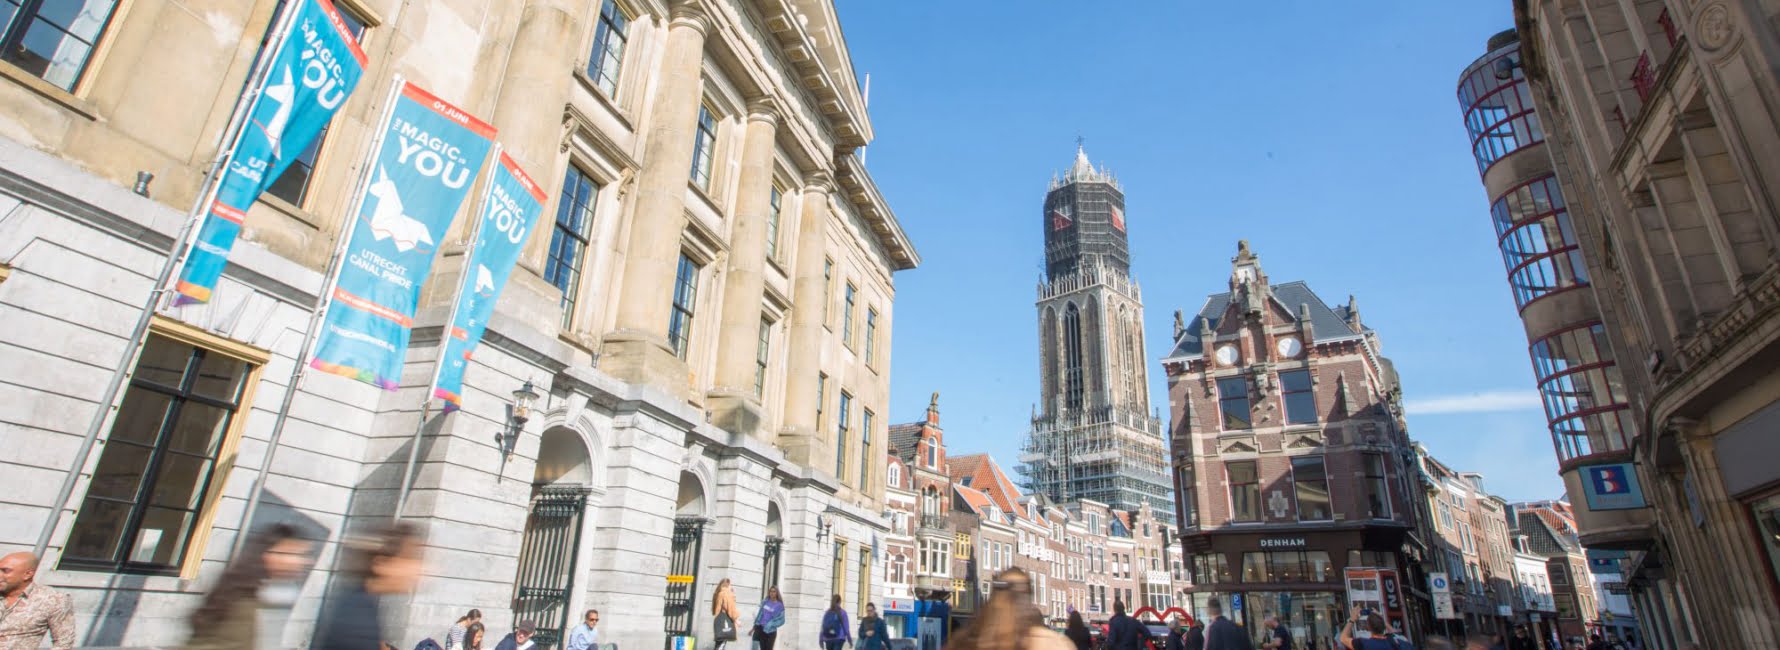 stadhuis van Utrecht met aan de voorkant fietsers en wandelaars. Op de achtergrond is de domtoren te zien en een aantal winkelpanden.